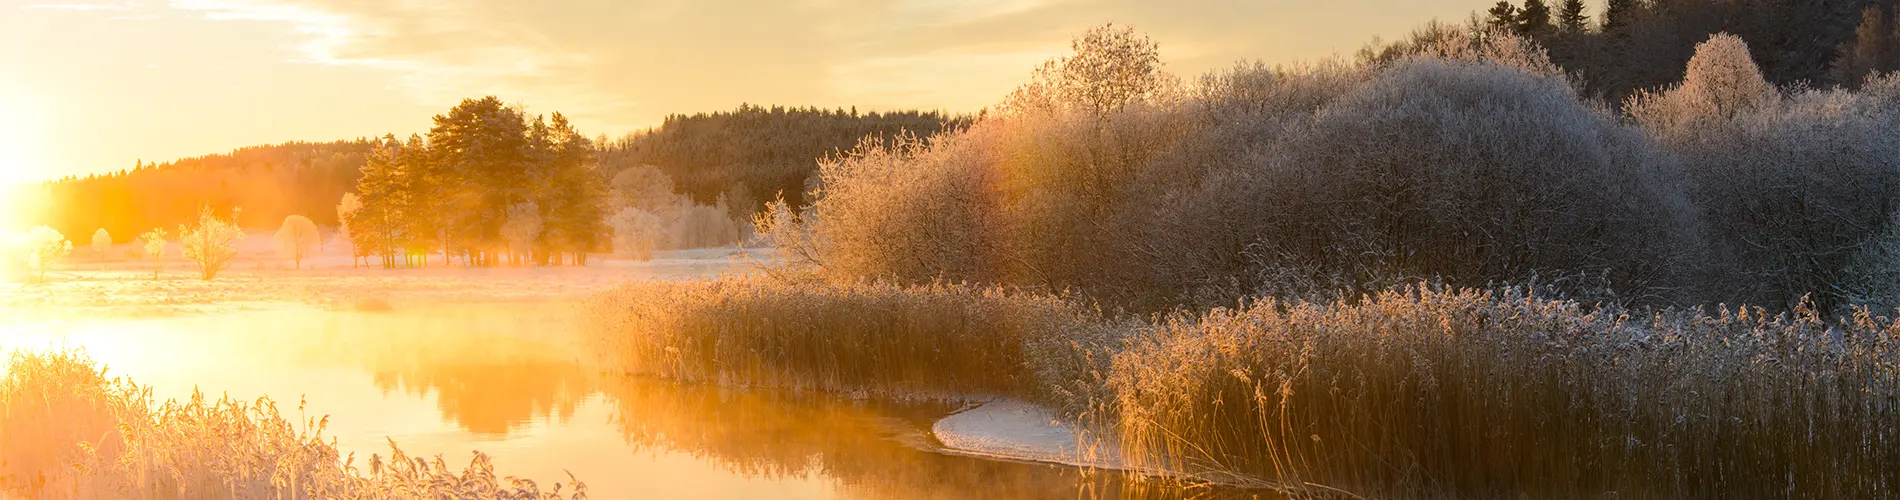 Bild på en vacker vintervy över en sjö